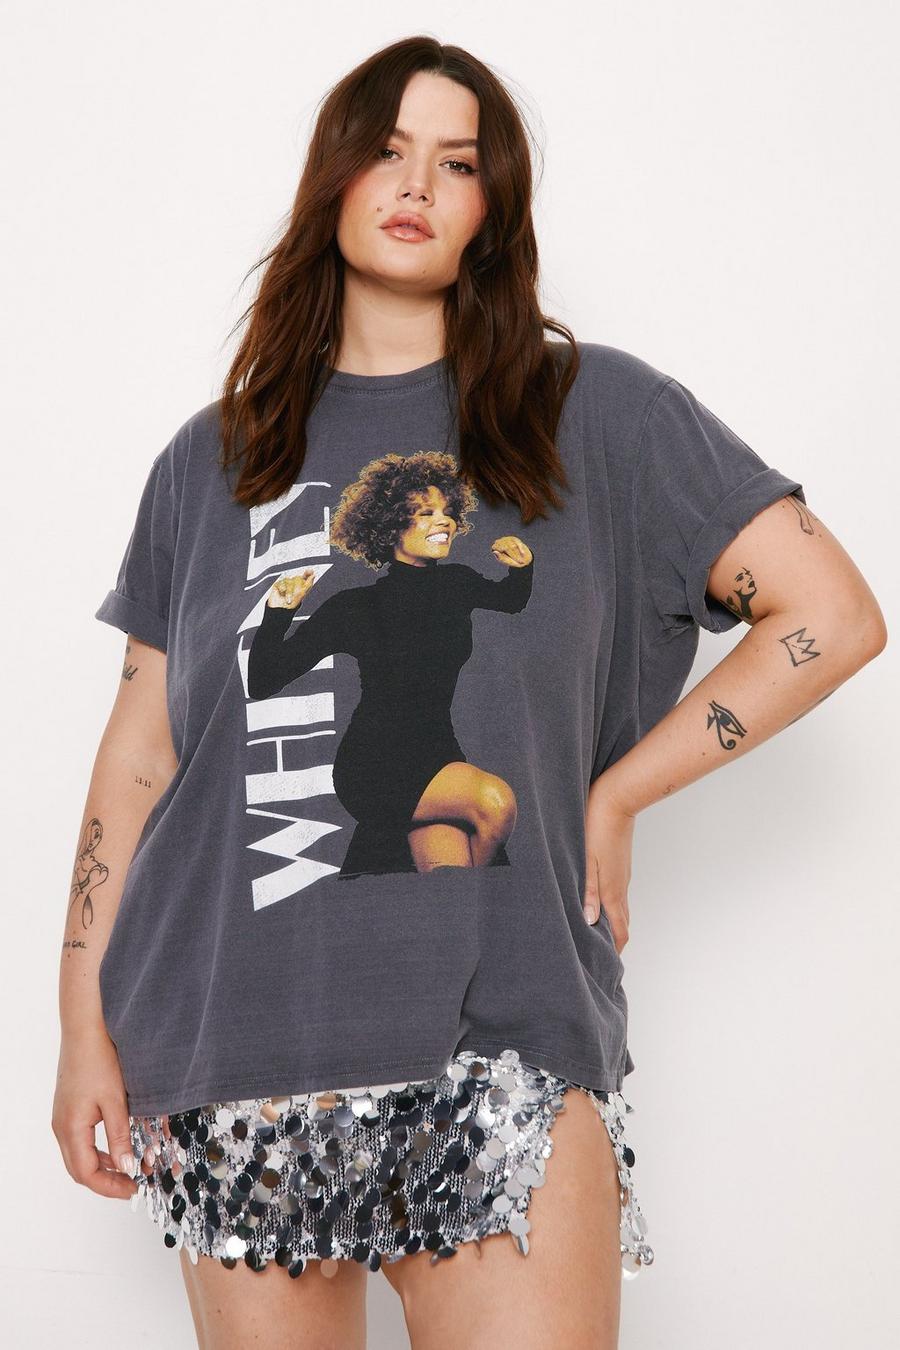 Plus Size Whitney Houston Graphic Overdyed Oversized T-shirt